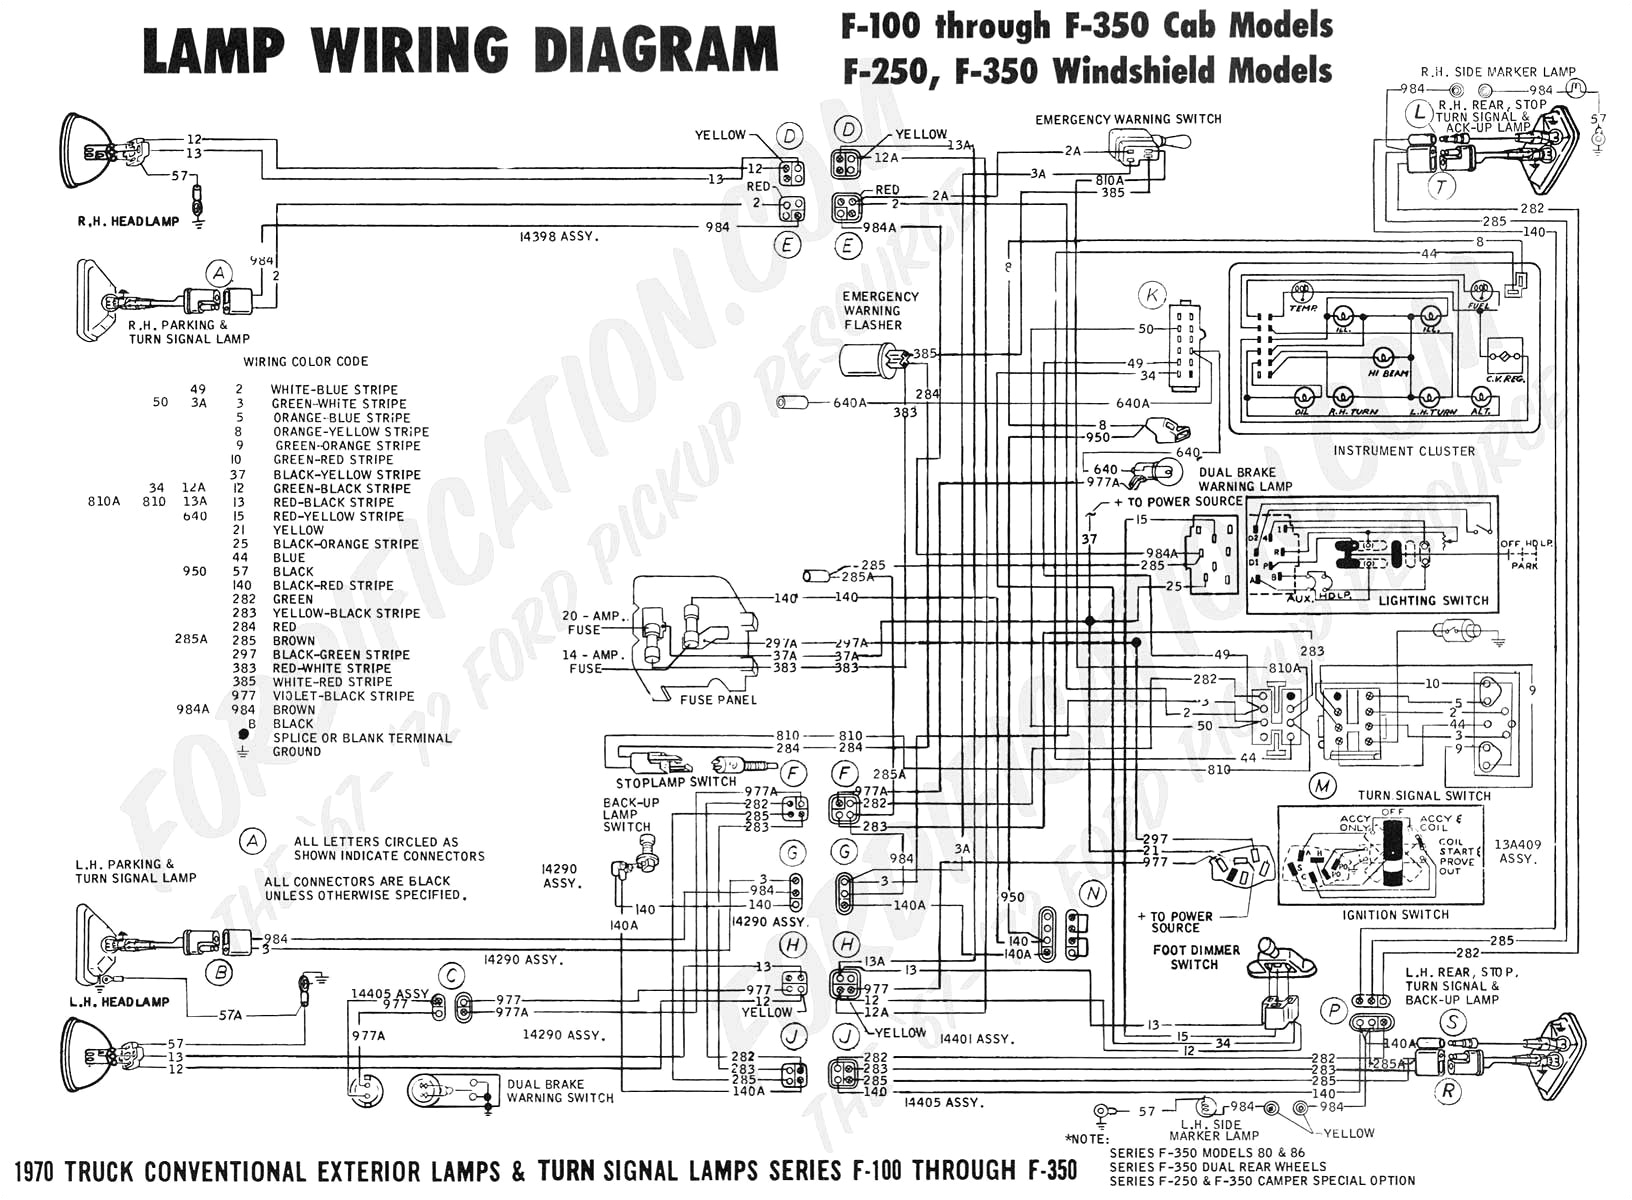 hastings wiring diagrams blog wiring diagram flowserve wiring diagram blog wiring diagram hastings wiring diagrams